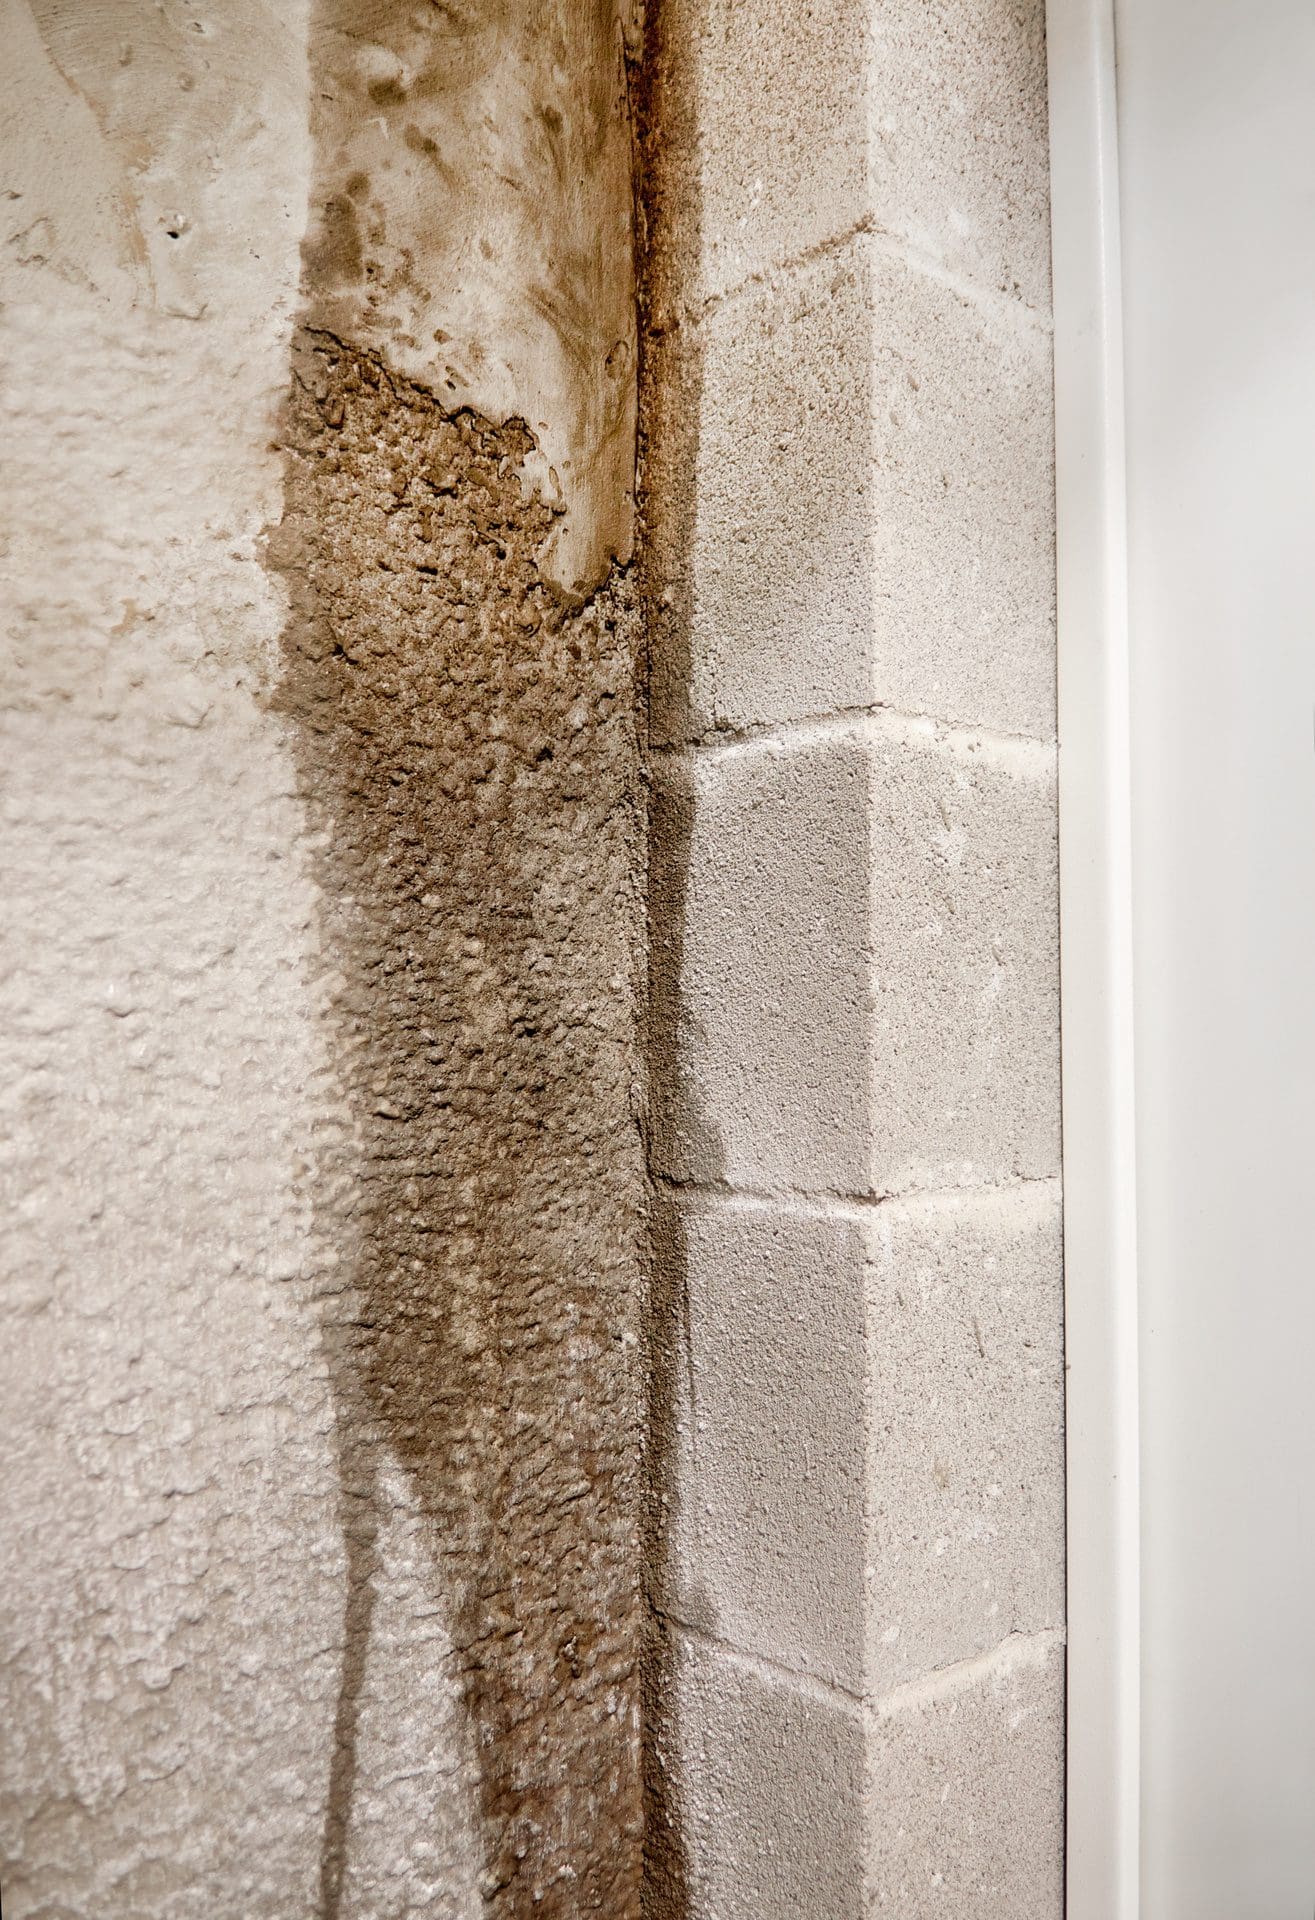 Feuchte Wand im Keller nach Wasserschaden - Wie trocknen / entfeuchten? (© cunaplus / stock.adobe.com)